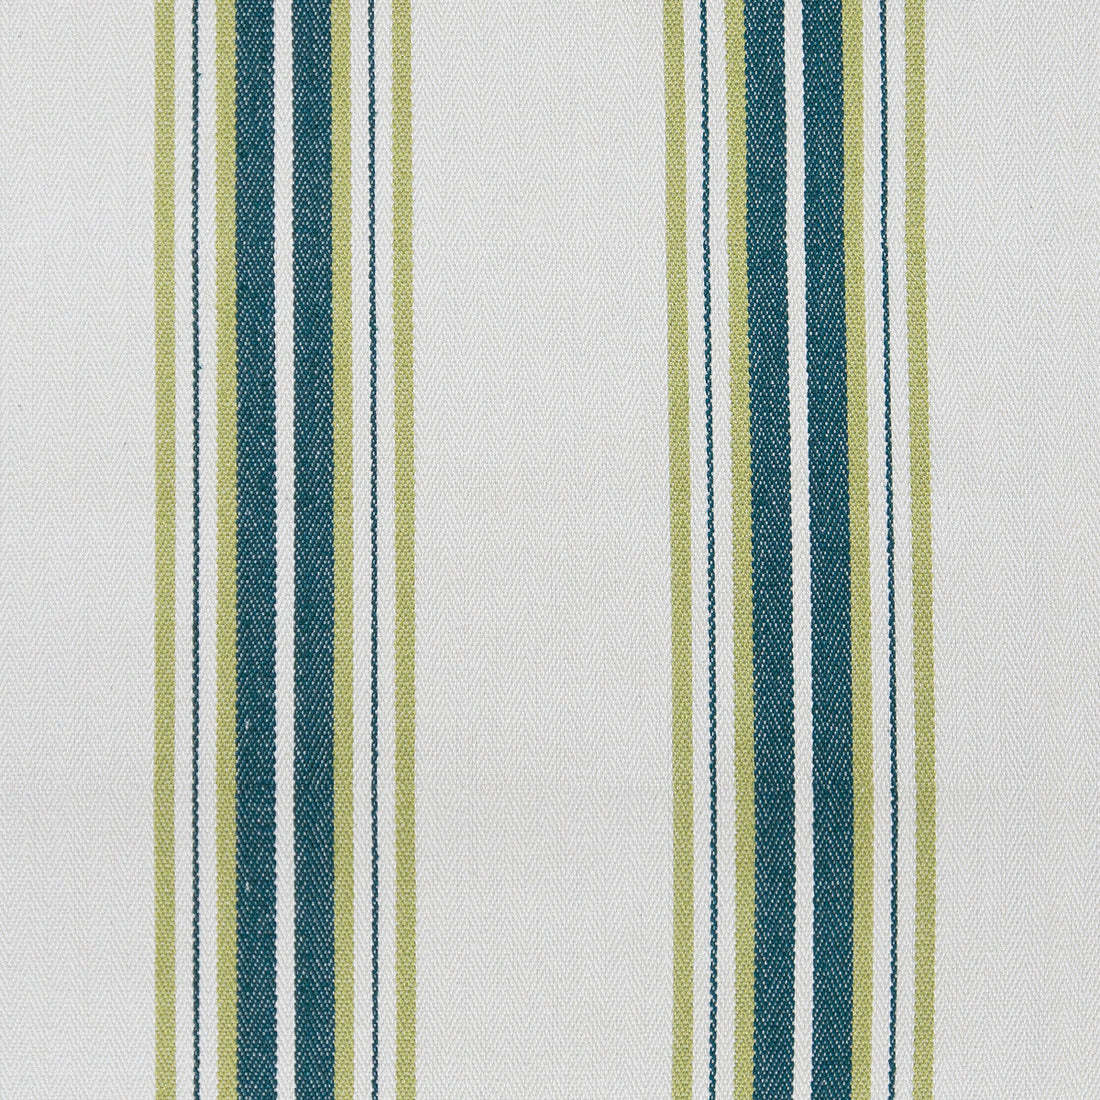 Nueva York fabric in verde color - pattern GDT5573.006.0 - by Gaston y Daniela in the Gaston Luis Bustamante collection